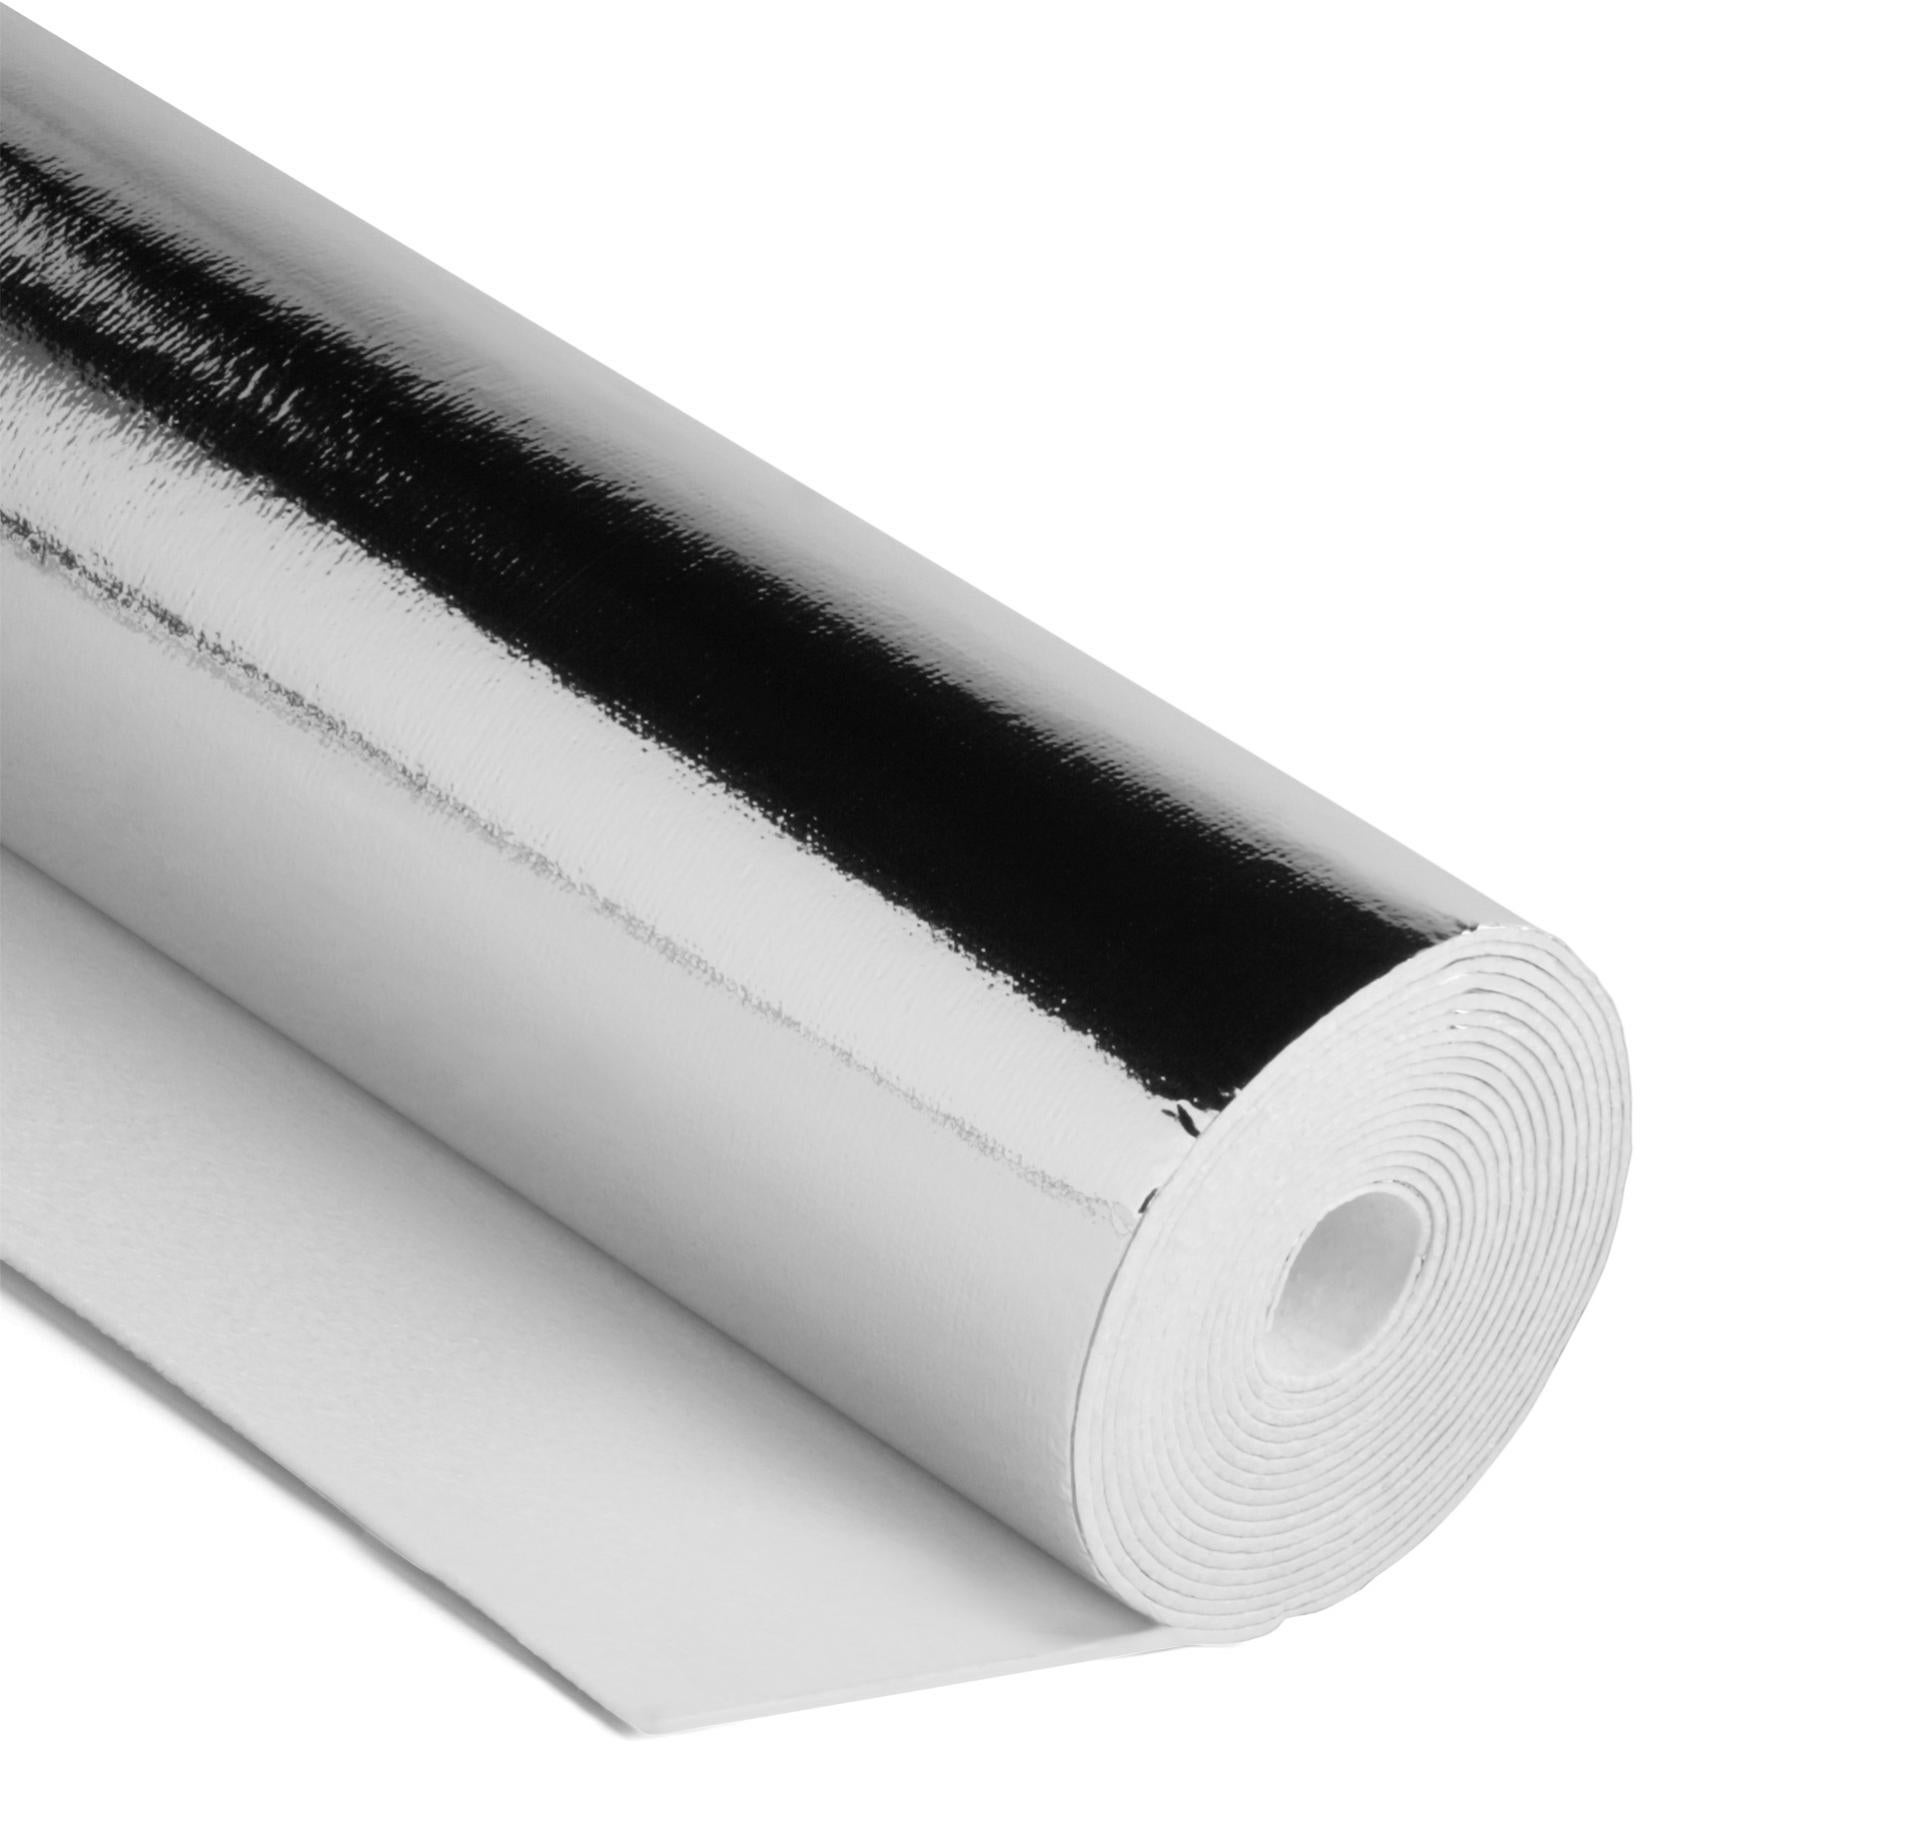 Comment mettre une feuille d'aluminium derrière radiateur ? - La Recette  Parfaite